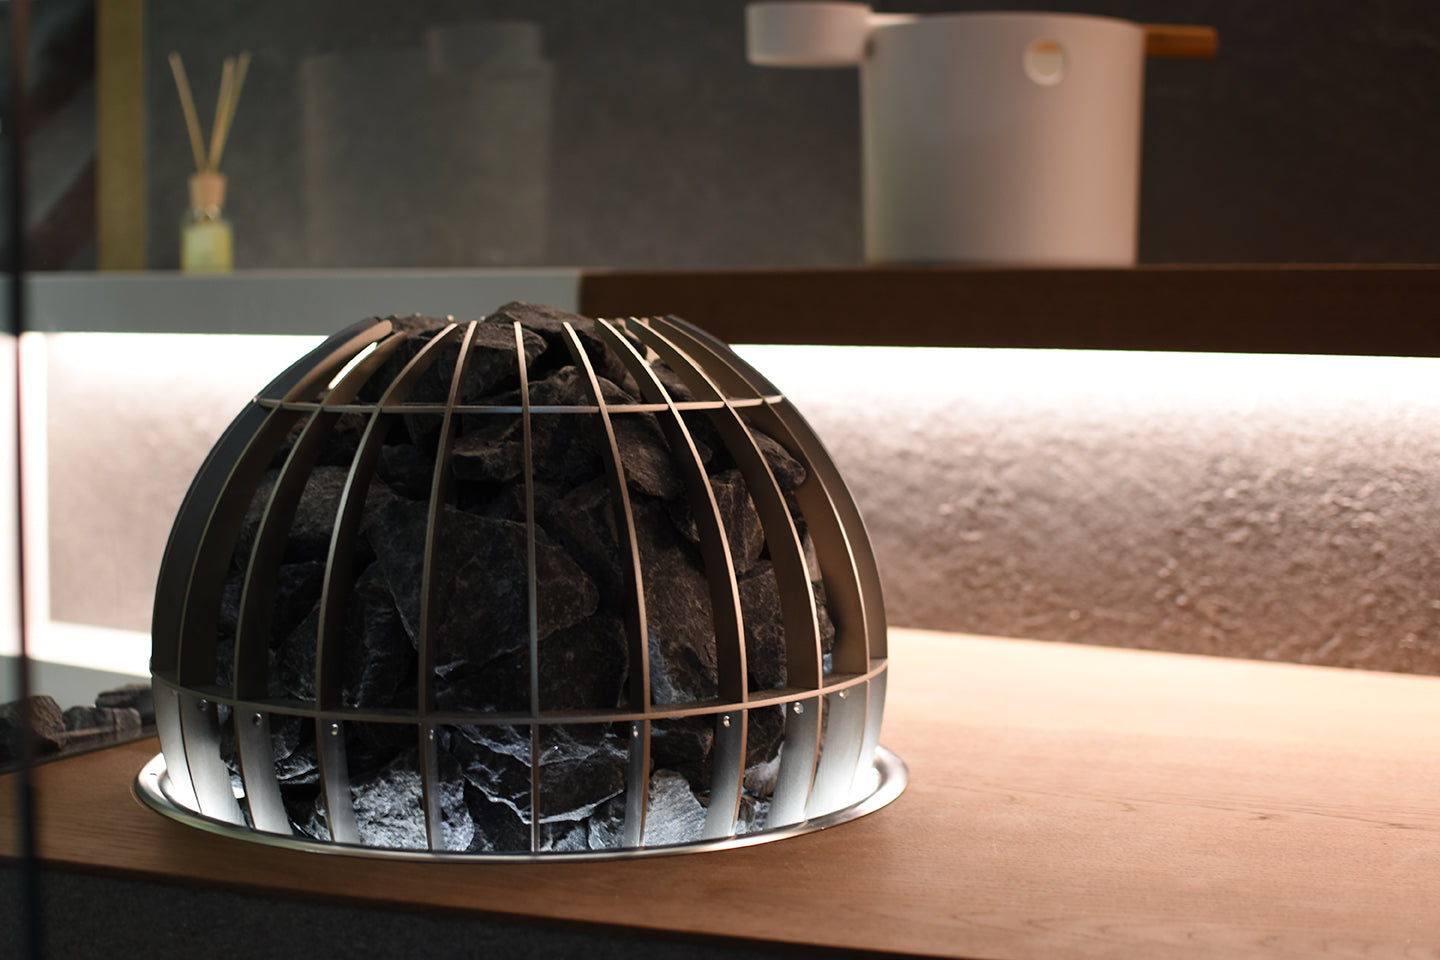 Harvia Globe | Elektro Saunaofen Komplettset inkl. 80 kg original wellmia® Saunasteine und Steuerung Harvia Xenio CX110 | 10,5 kW